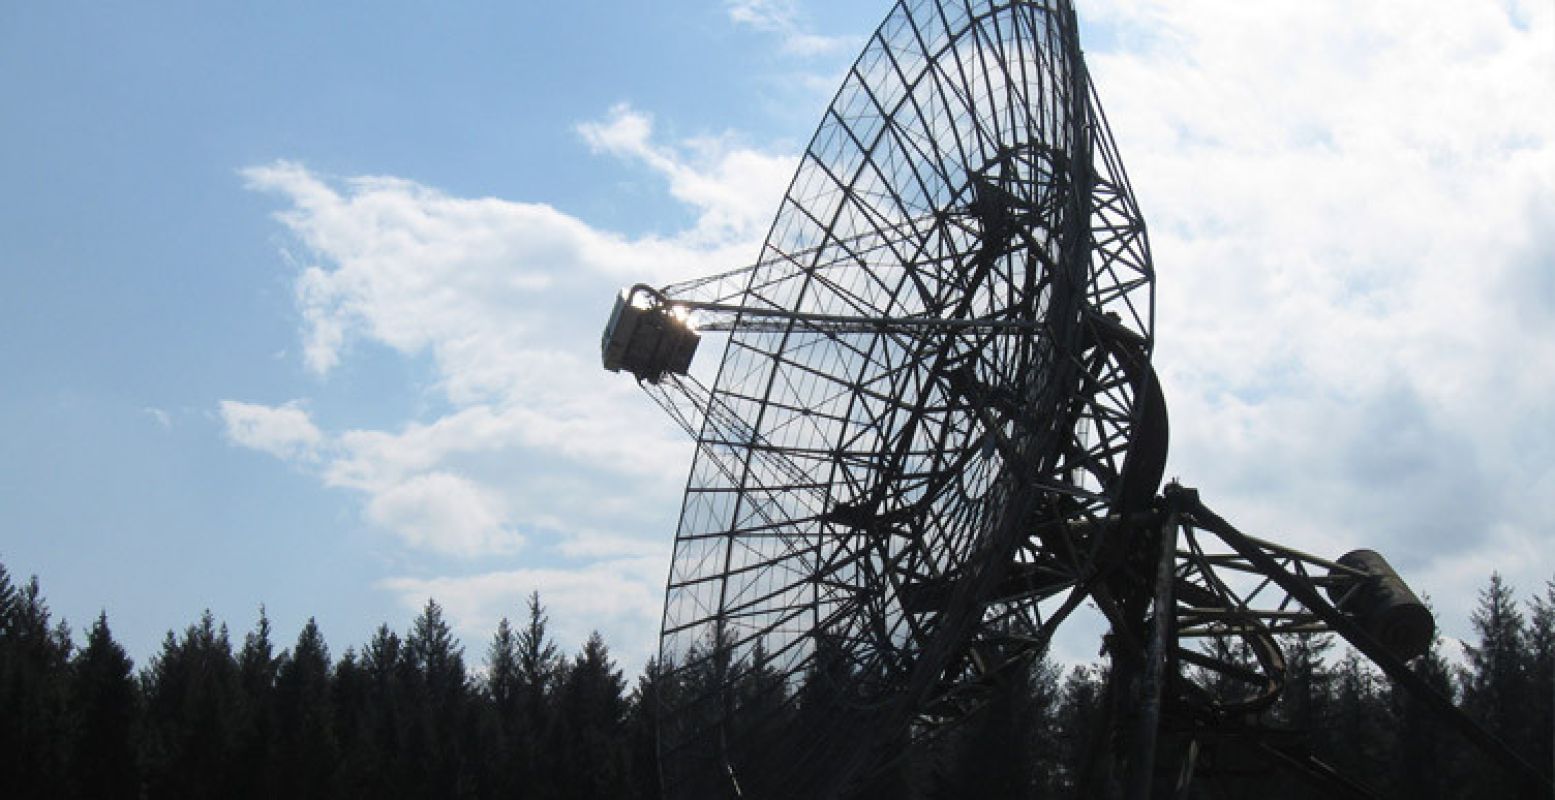 De radiotelescoop in Dwingeloo. Foto:  https://www.flickr.com/photos/rmdobservations/8073803686 ,  CC BY 2.0 